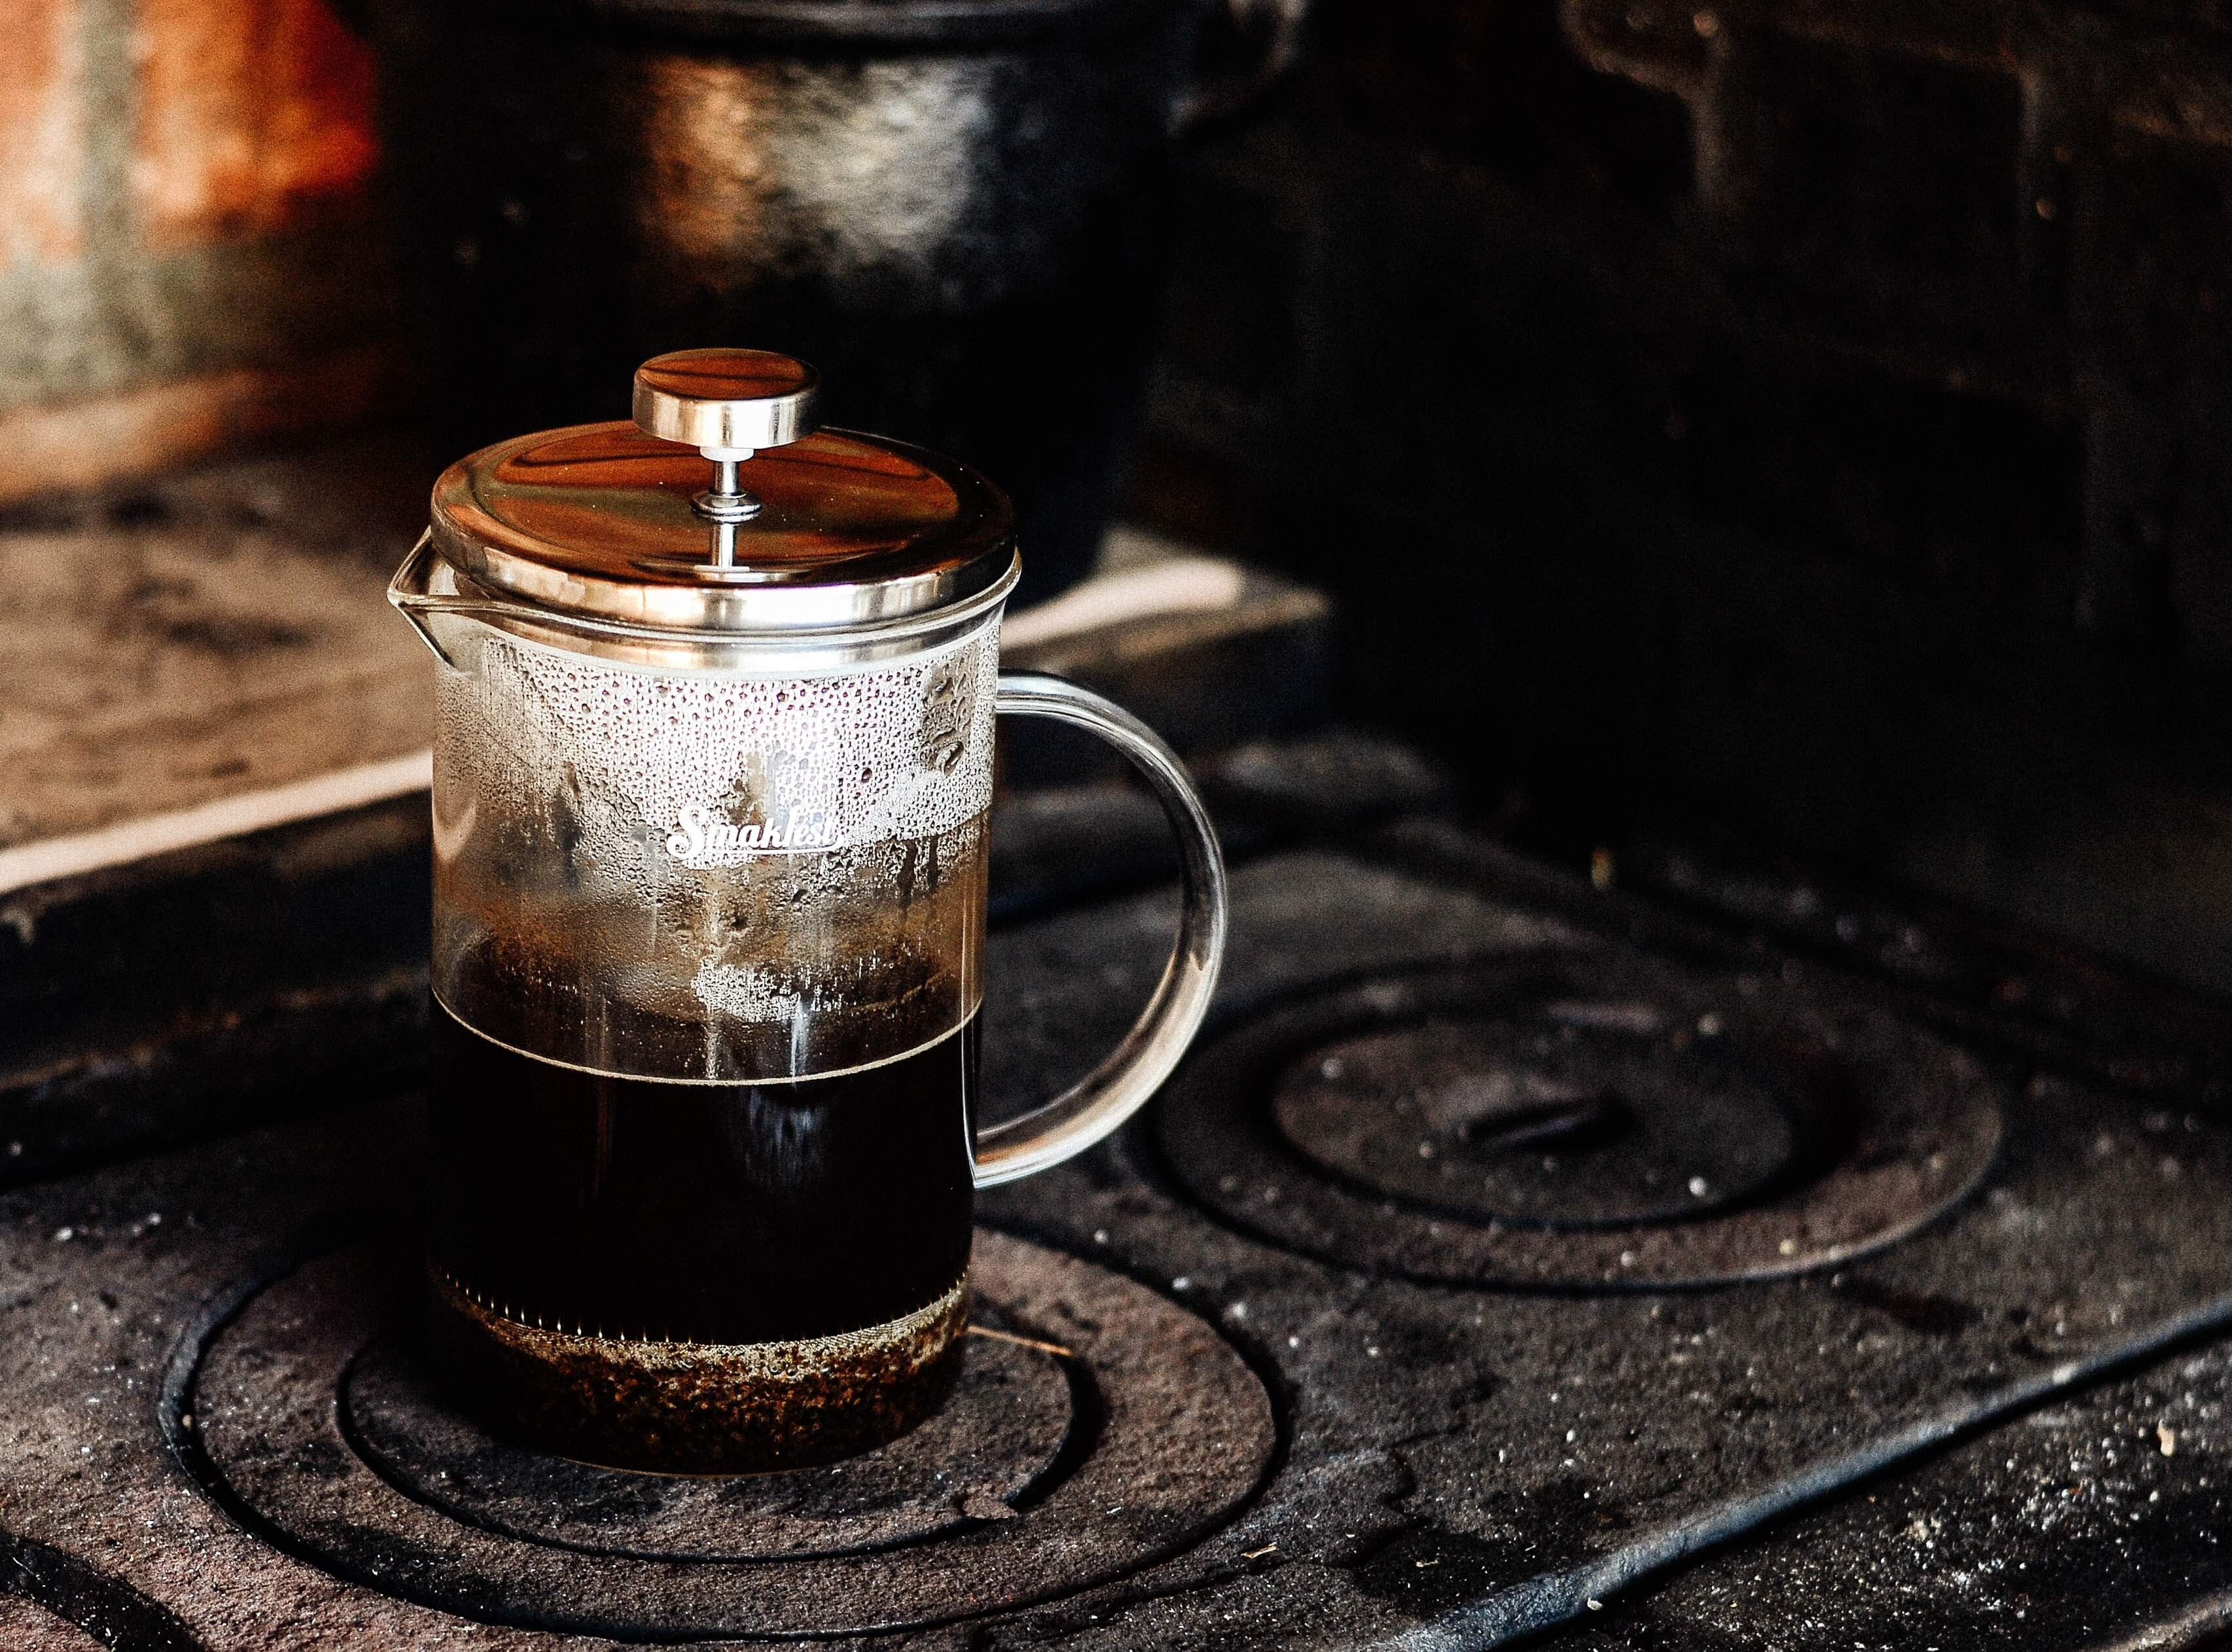 初心者向け コーヒー道具おすすめを紹介 自宅で淹れるミニマム器具セットあり デカフェ生活